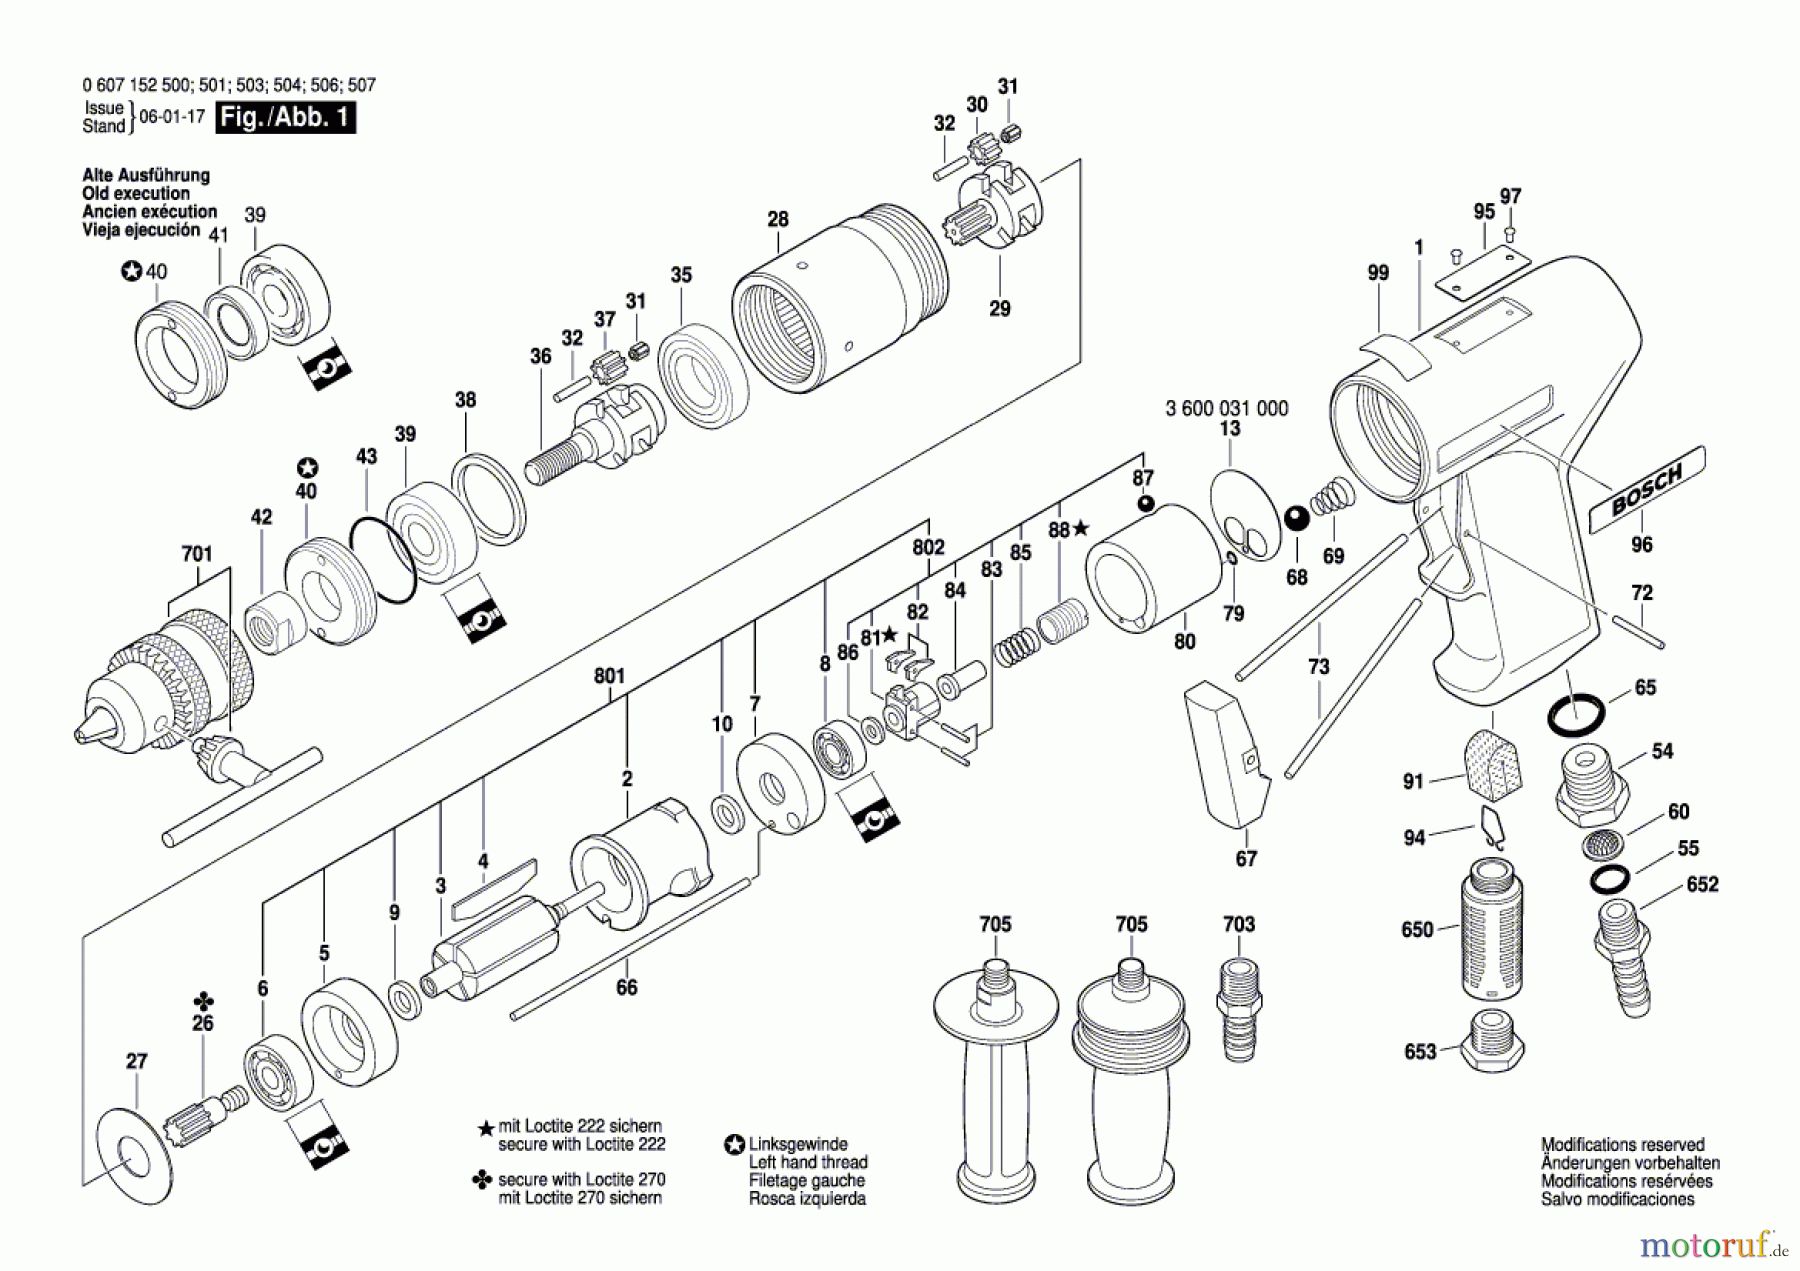  Bosch Werkzeug Pw-Bohrmaschine-Ind 550 WATT-SERIE Seite 1